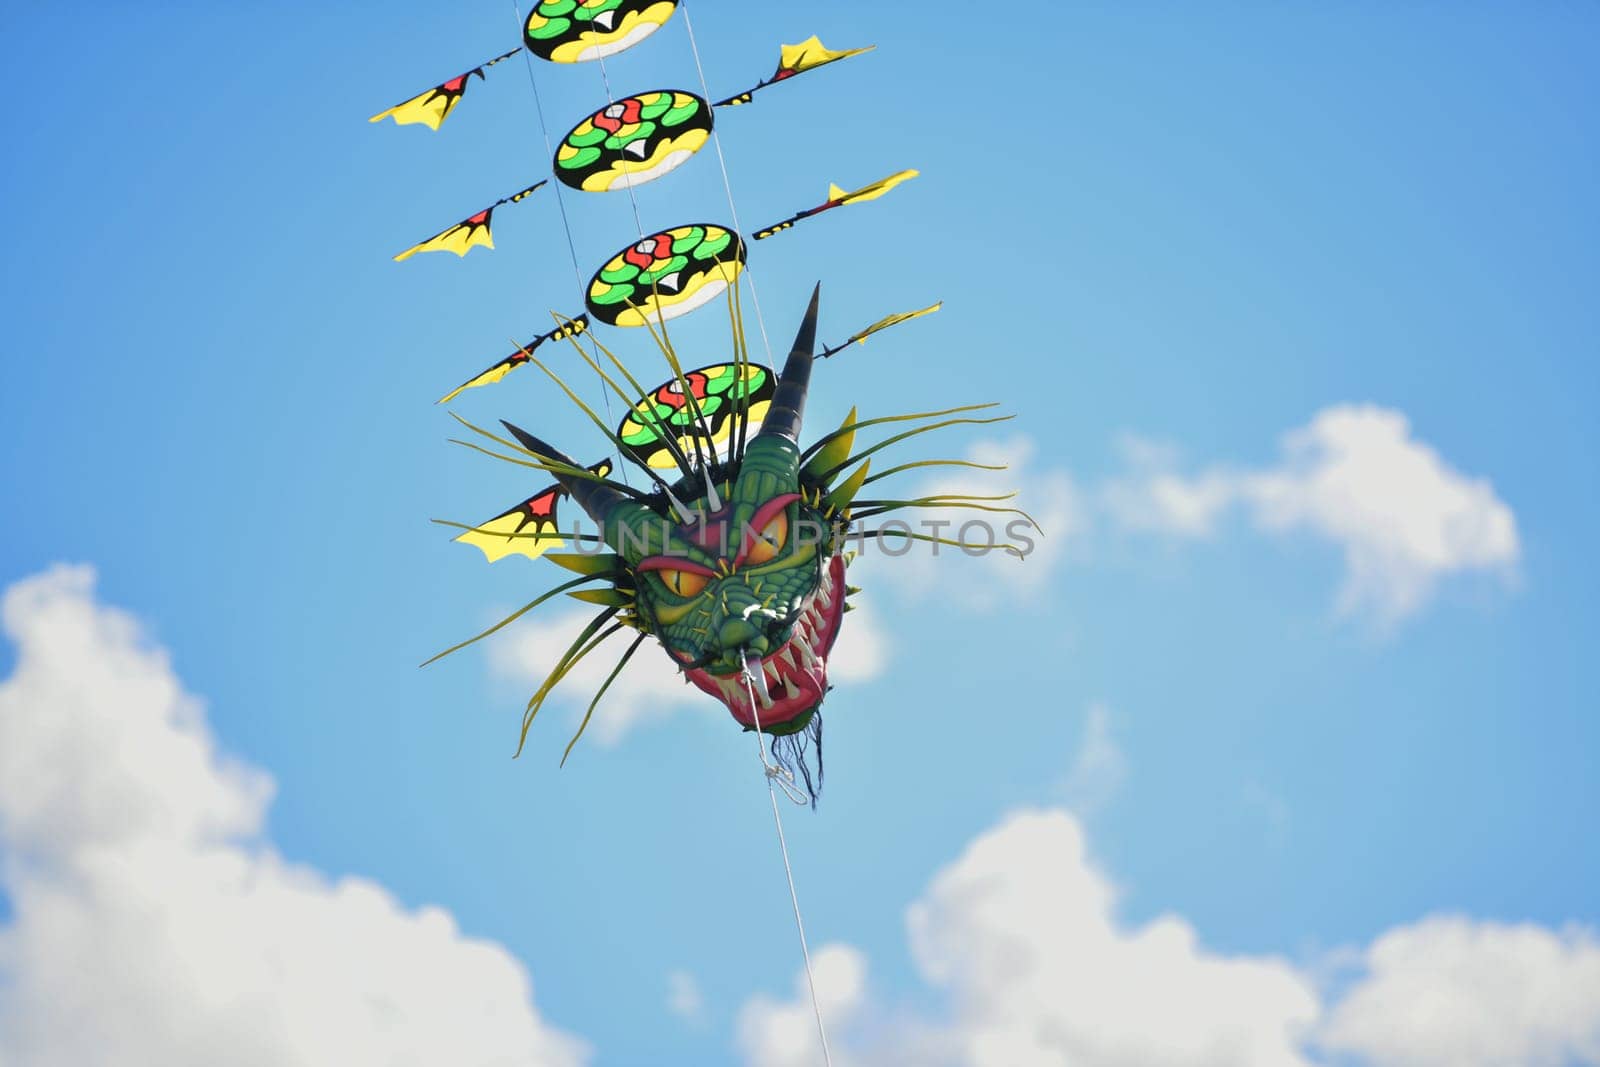 Dragon kite in the sky by Godi